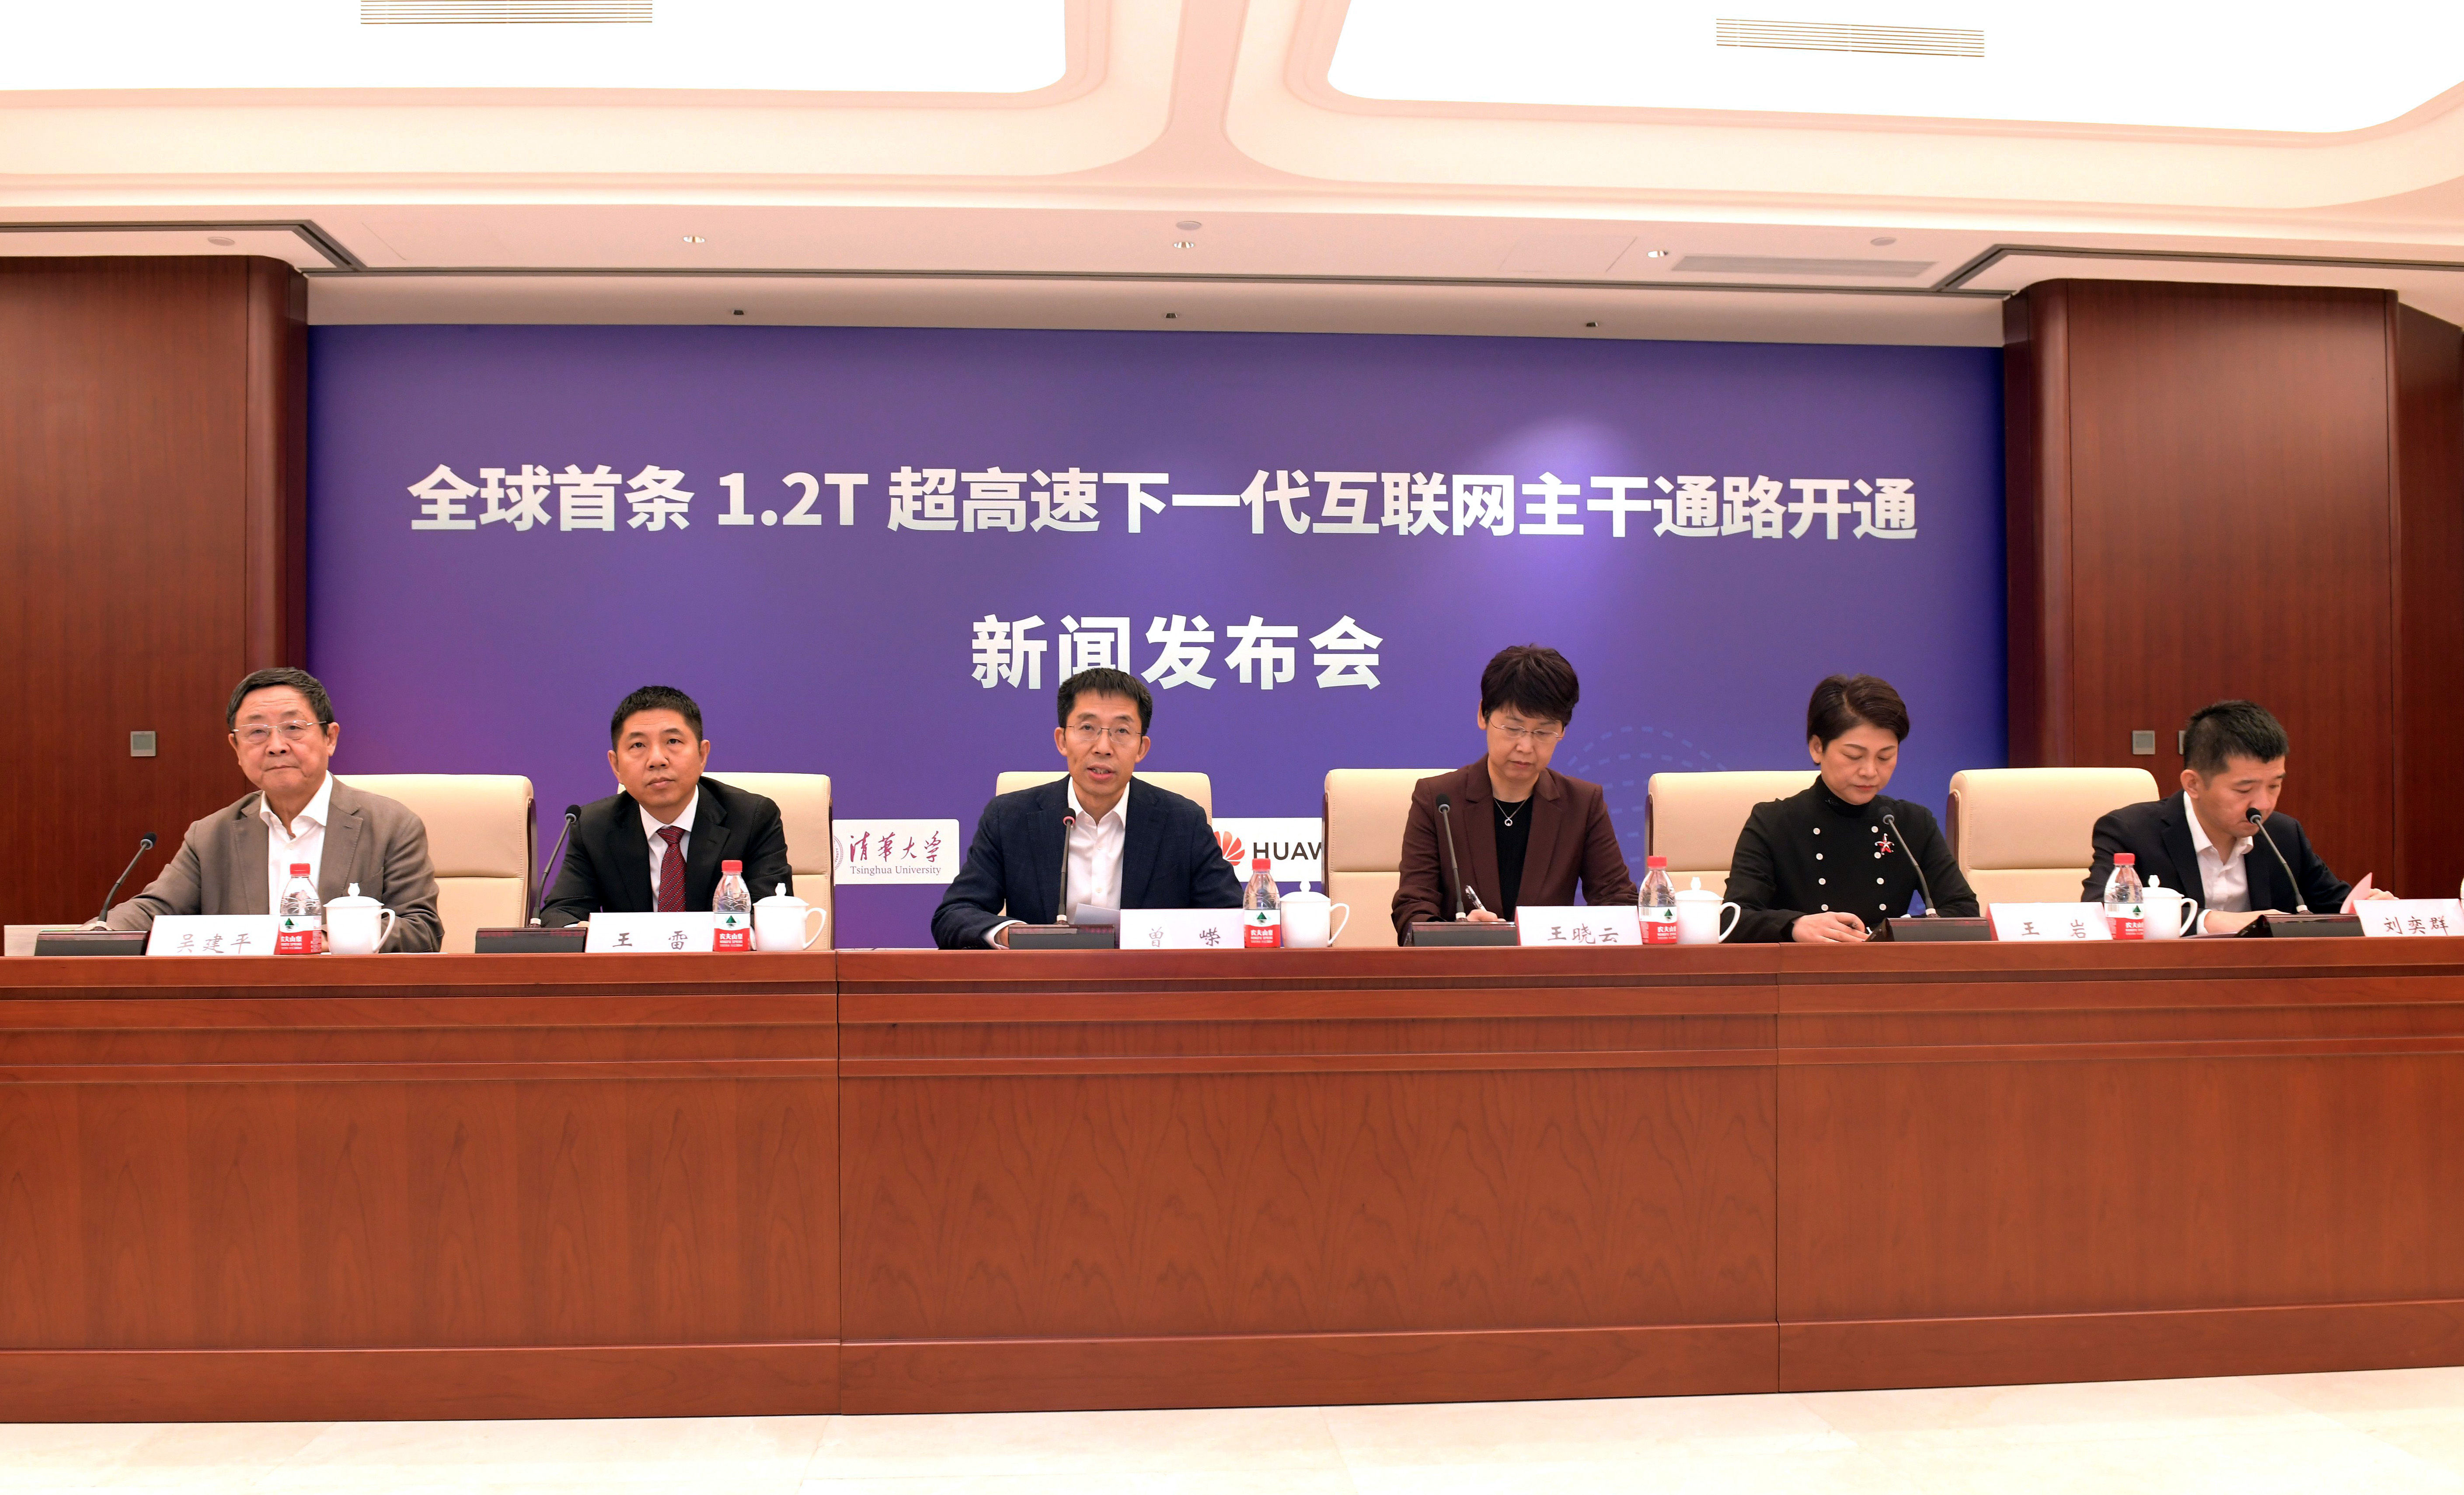 中国正式开通全球首条1.2T超高速下一代互联网主干通路